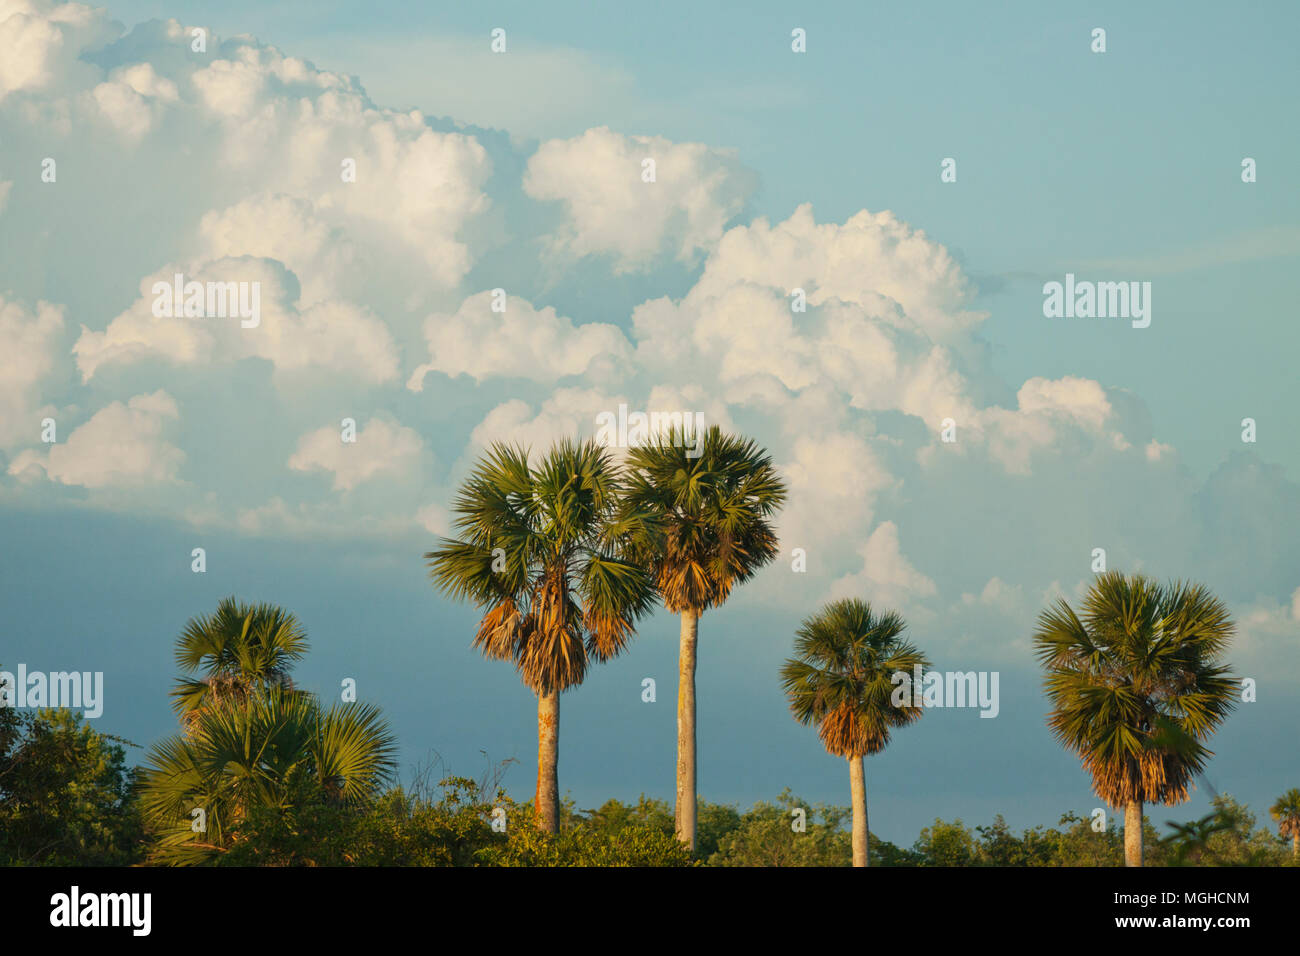 Nubes de tormenta y ventilador de palmas, nativa Savannah, Matanzas, Cuba Foto de stock